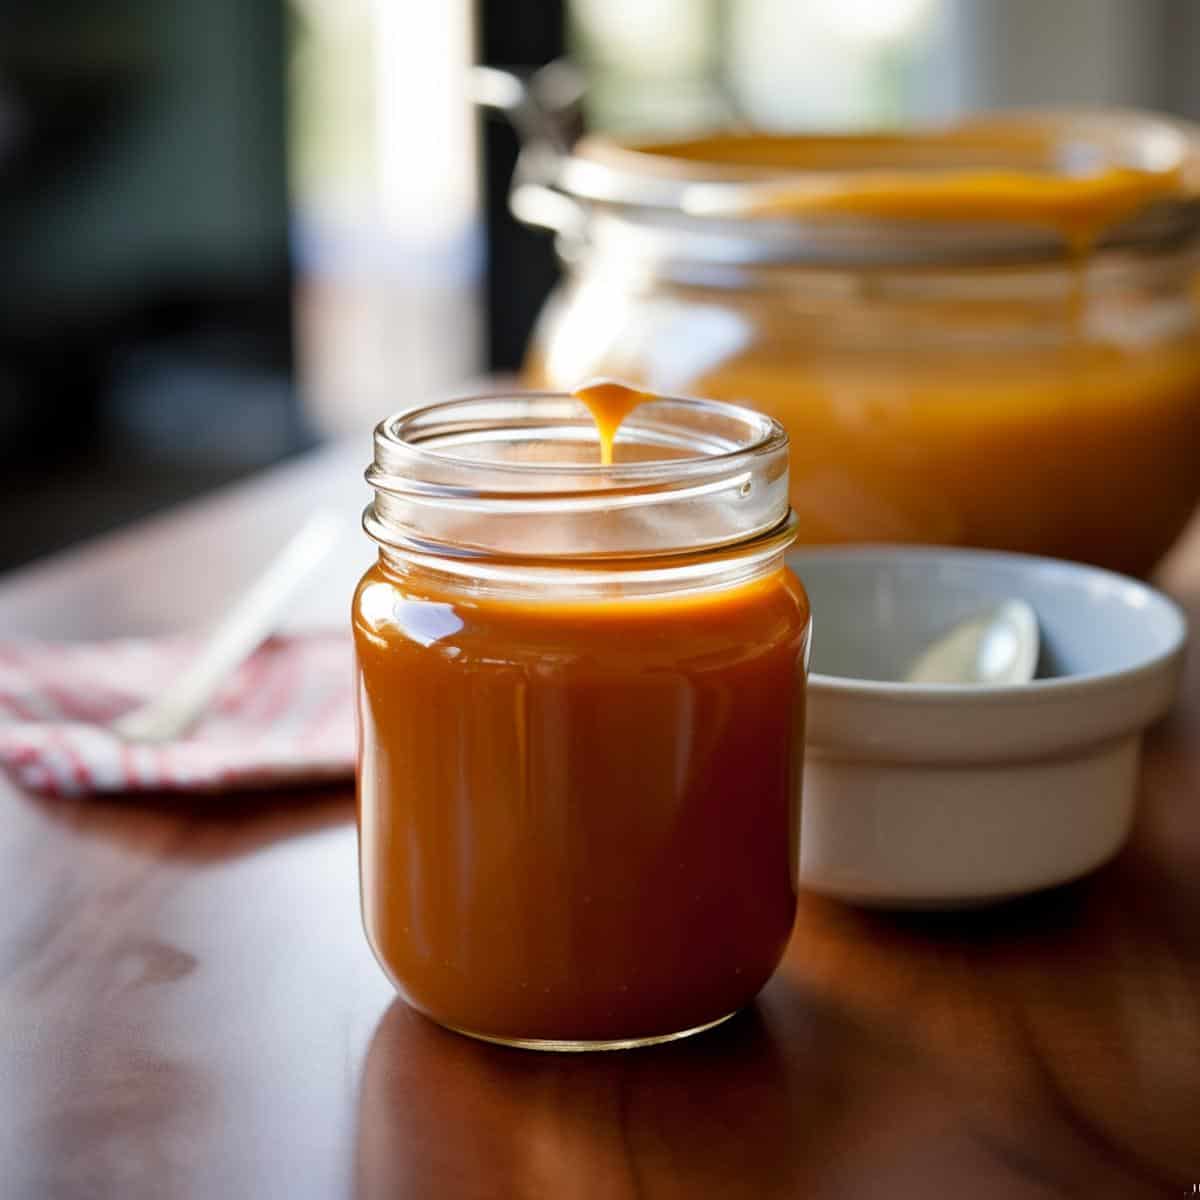 Butterscotch Sauce on a kitchen counter